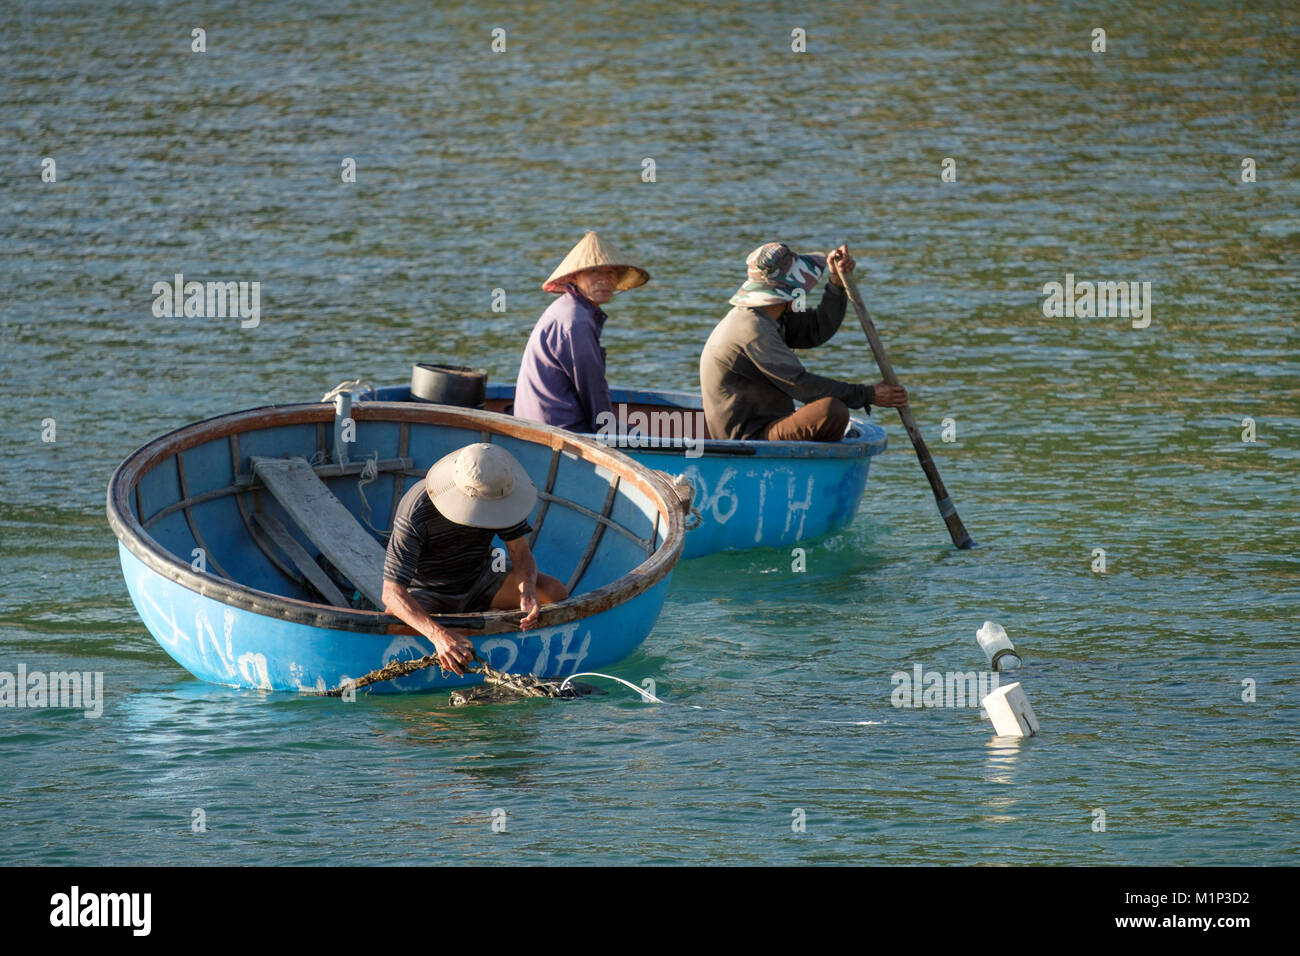 Cham Isola Pescatori coracle tradizionale cestello rotondo barche da pesca, Quang Nam, Vietnam, Indocina, Asia sud-orientale, Asia Foto Stock